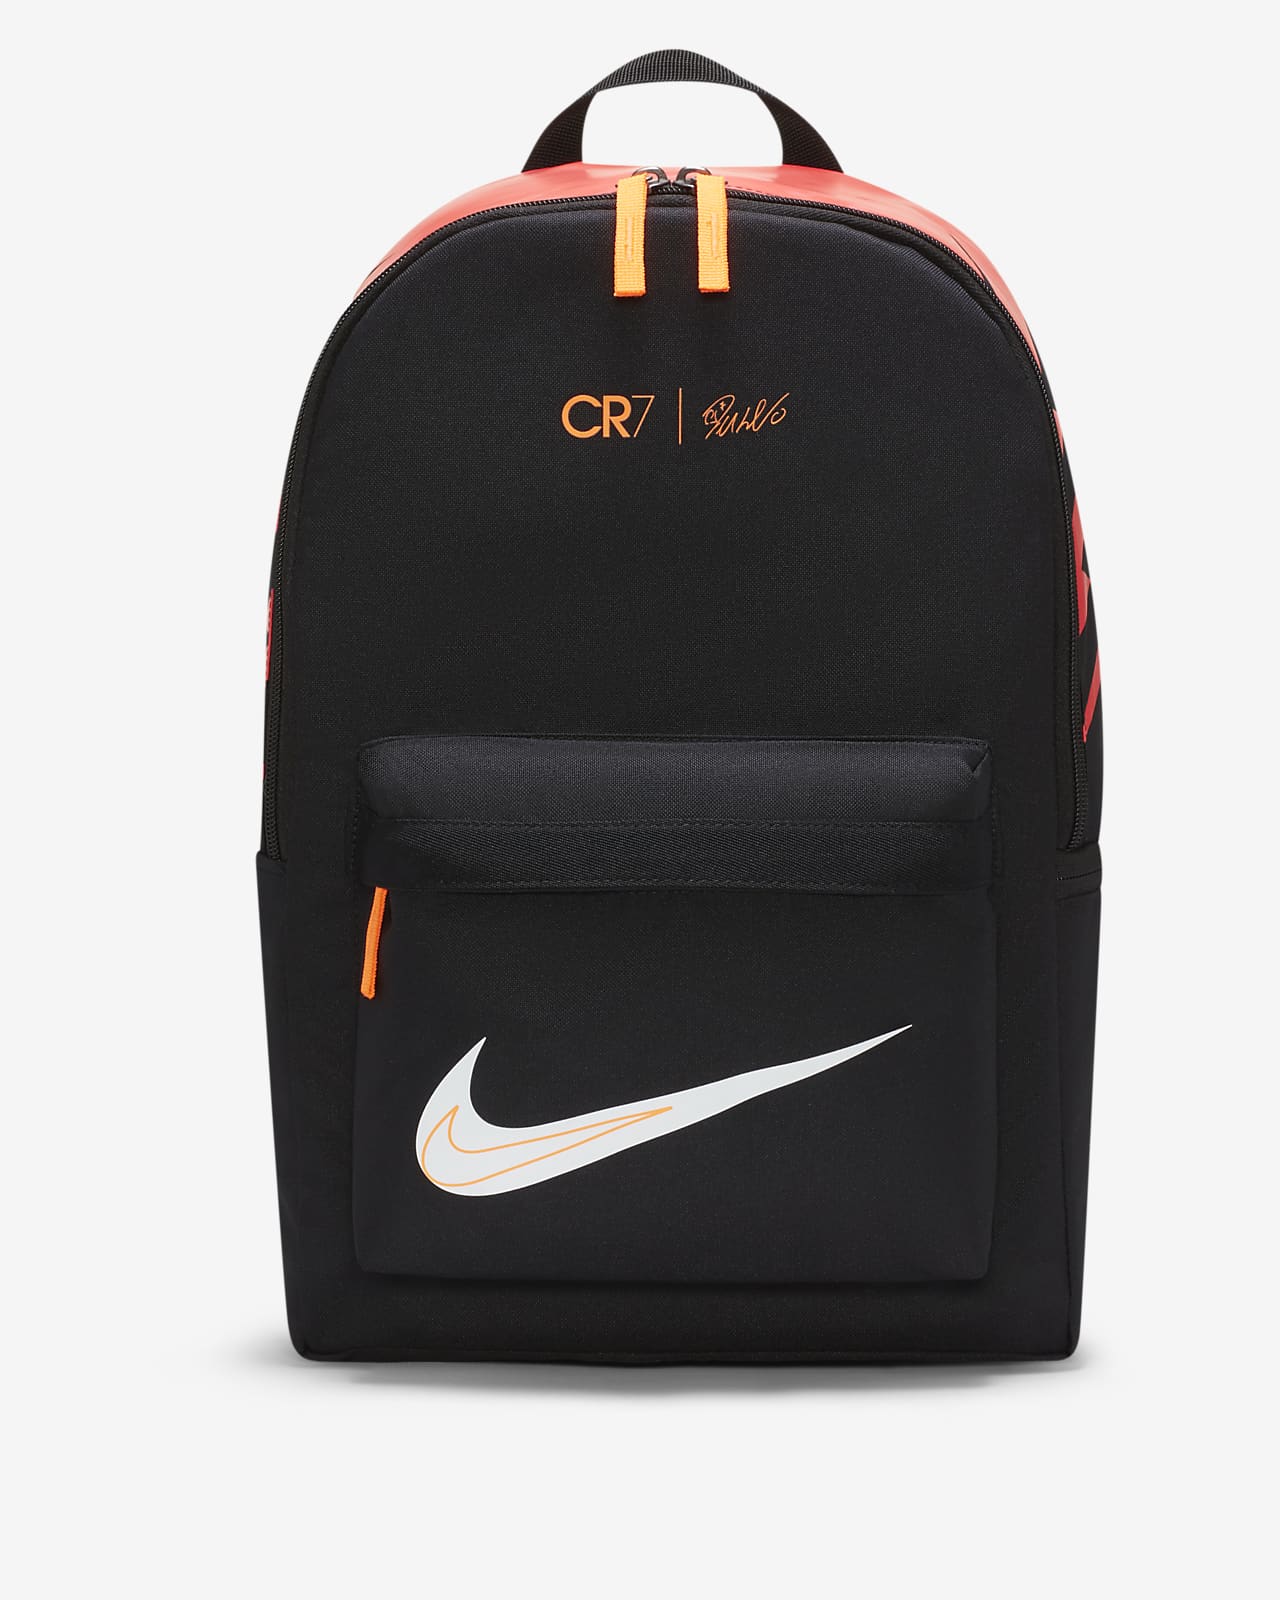 CR7 Kids' Soccer Backpack. Nike JP